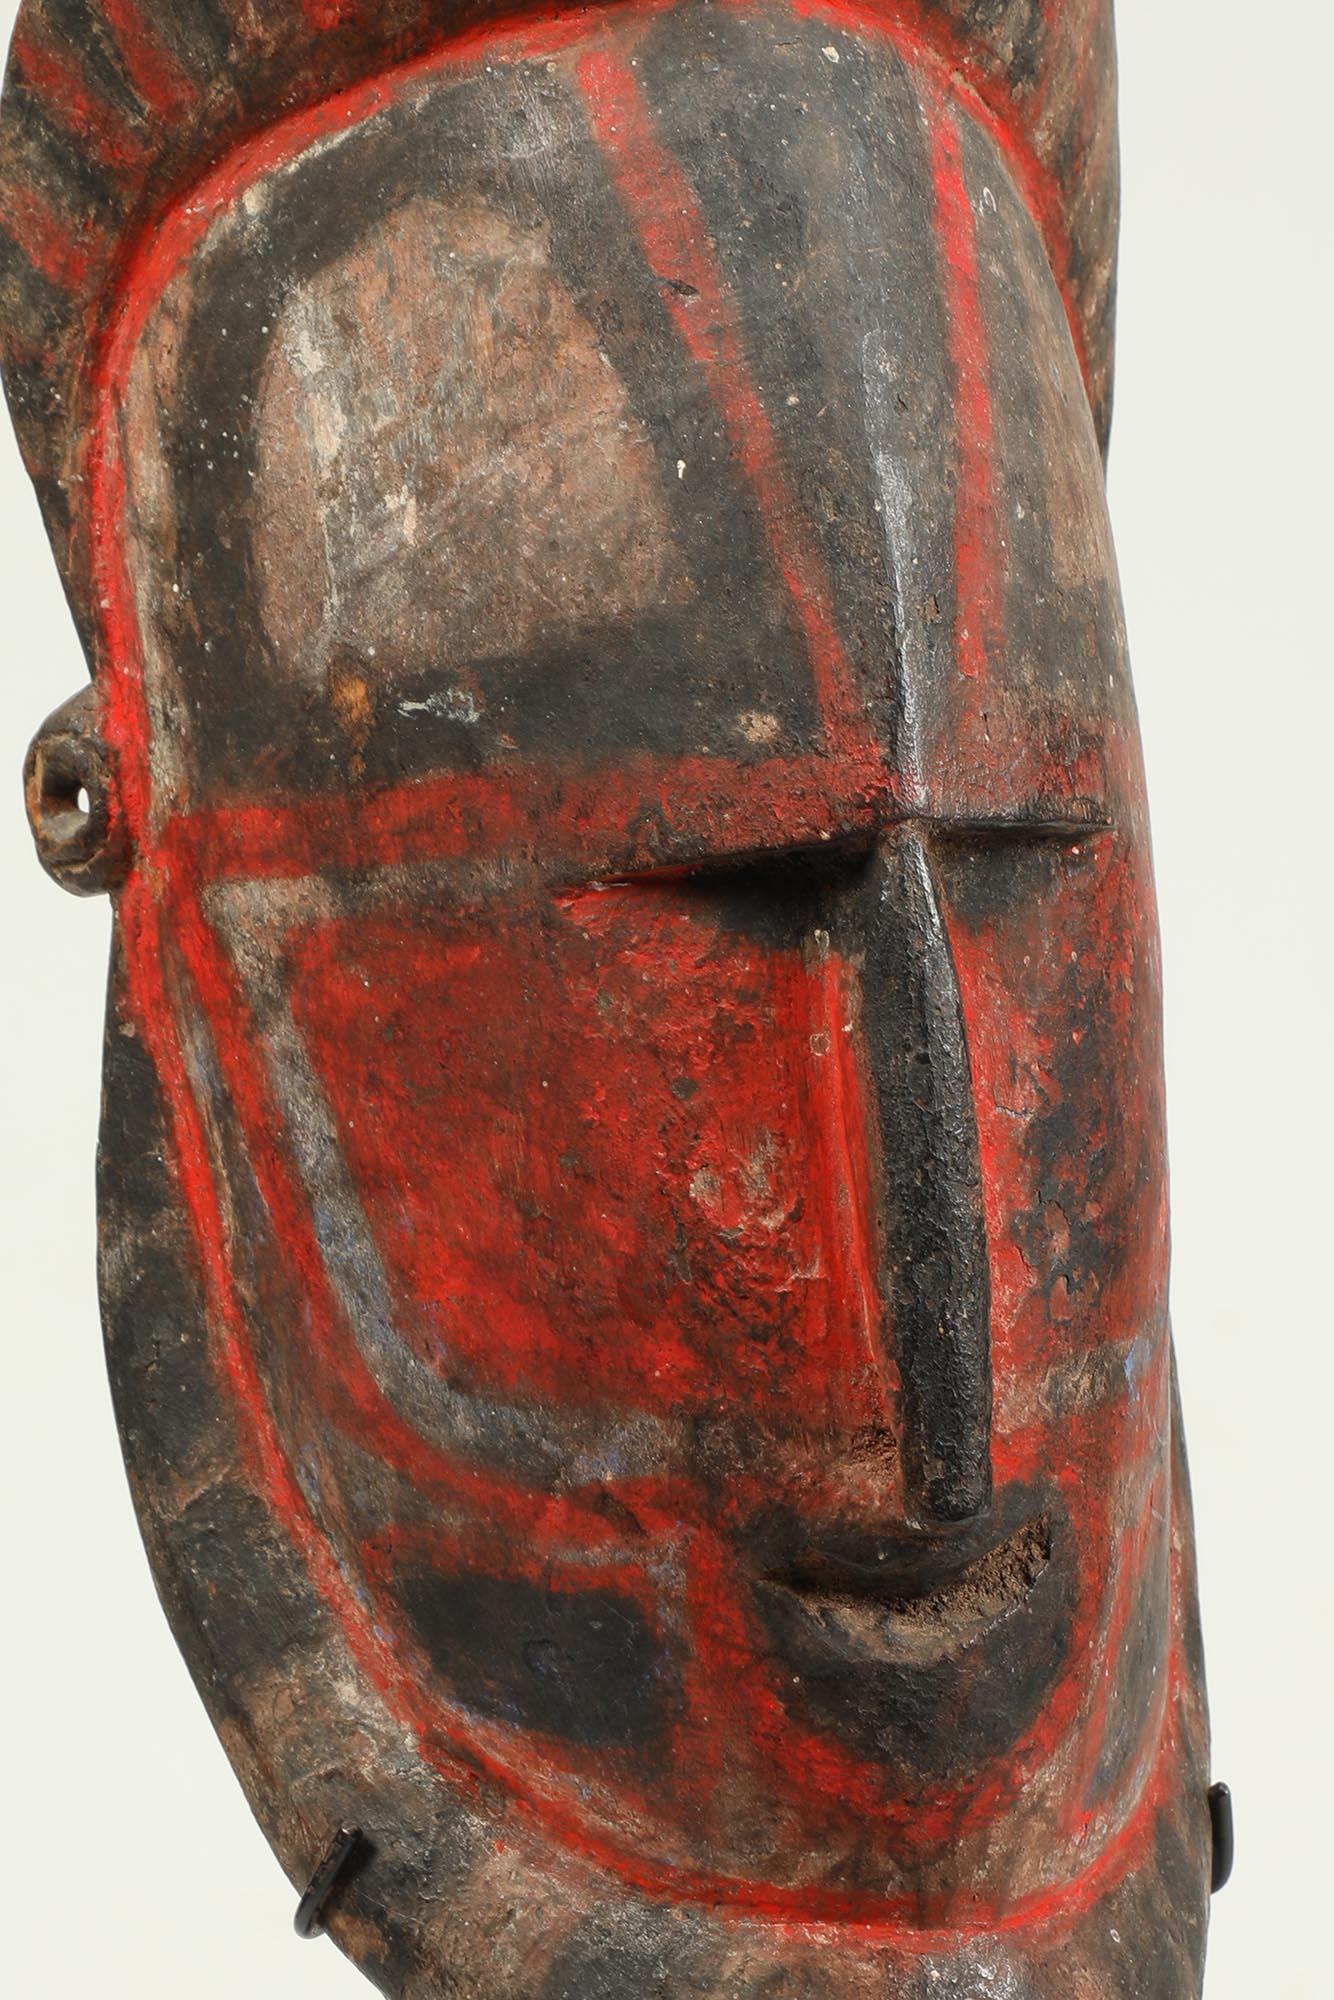 Frühe Sepik-Hartholzmaske aus Papua-Neuguinea mit roten, schwarzen und weißen Pigmenten.
Maske ist 10 Zoll hoch, auf benutzerdefinierten Metallbasis Gesamthöhe 12 1/2 Zoll.

